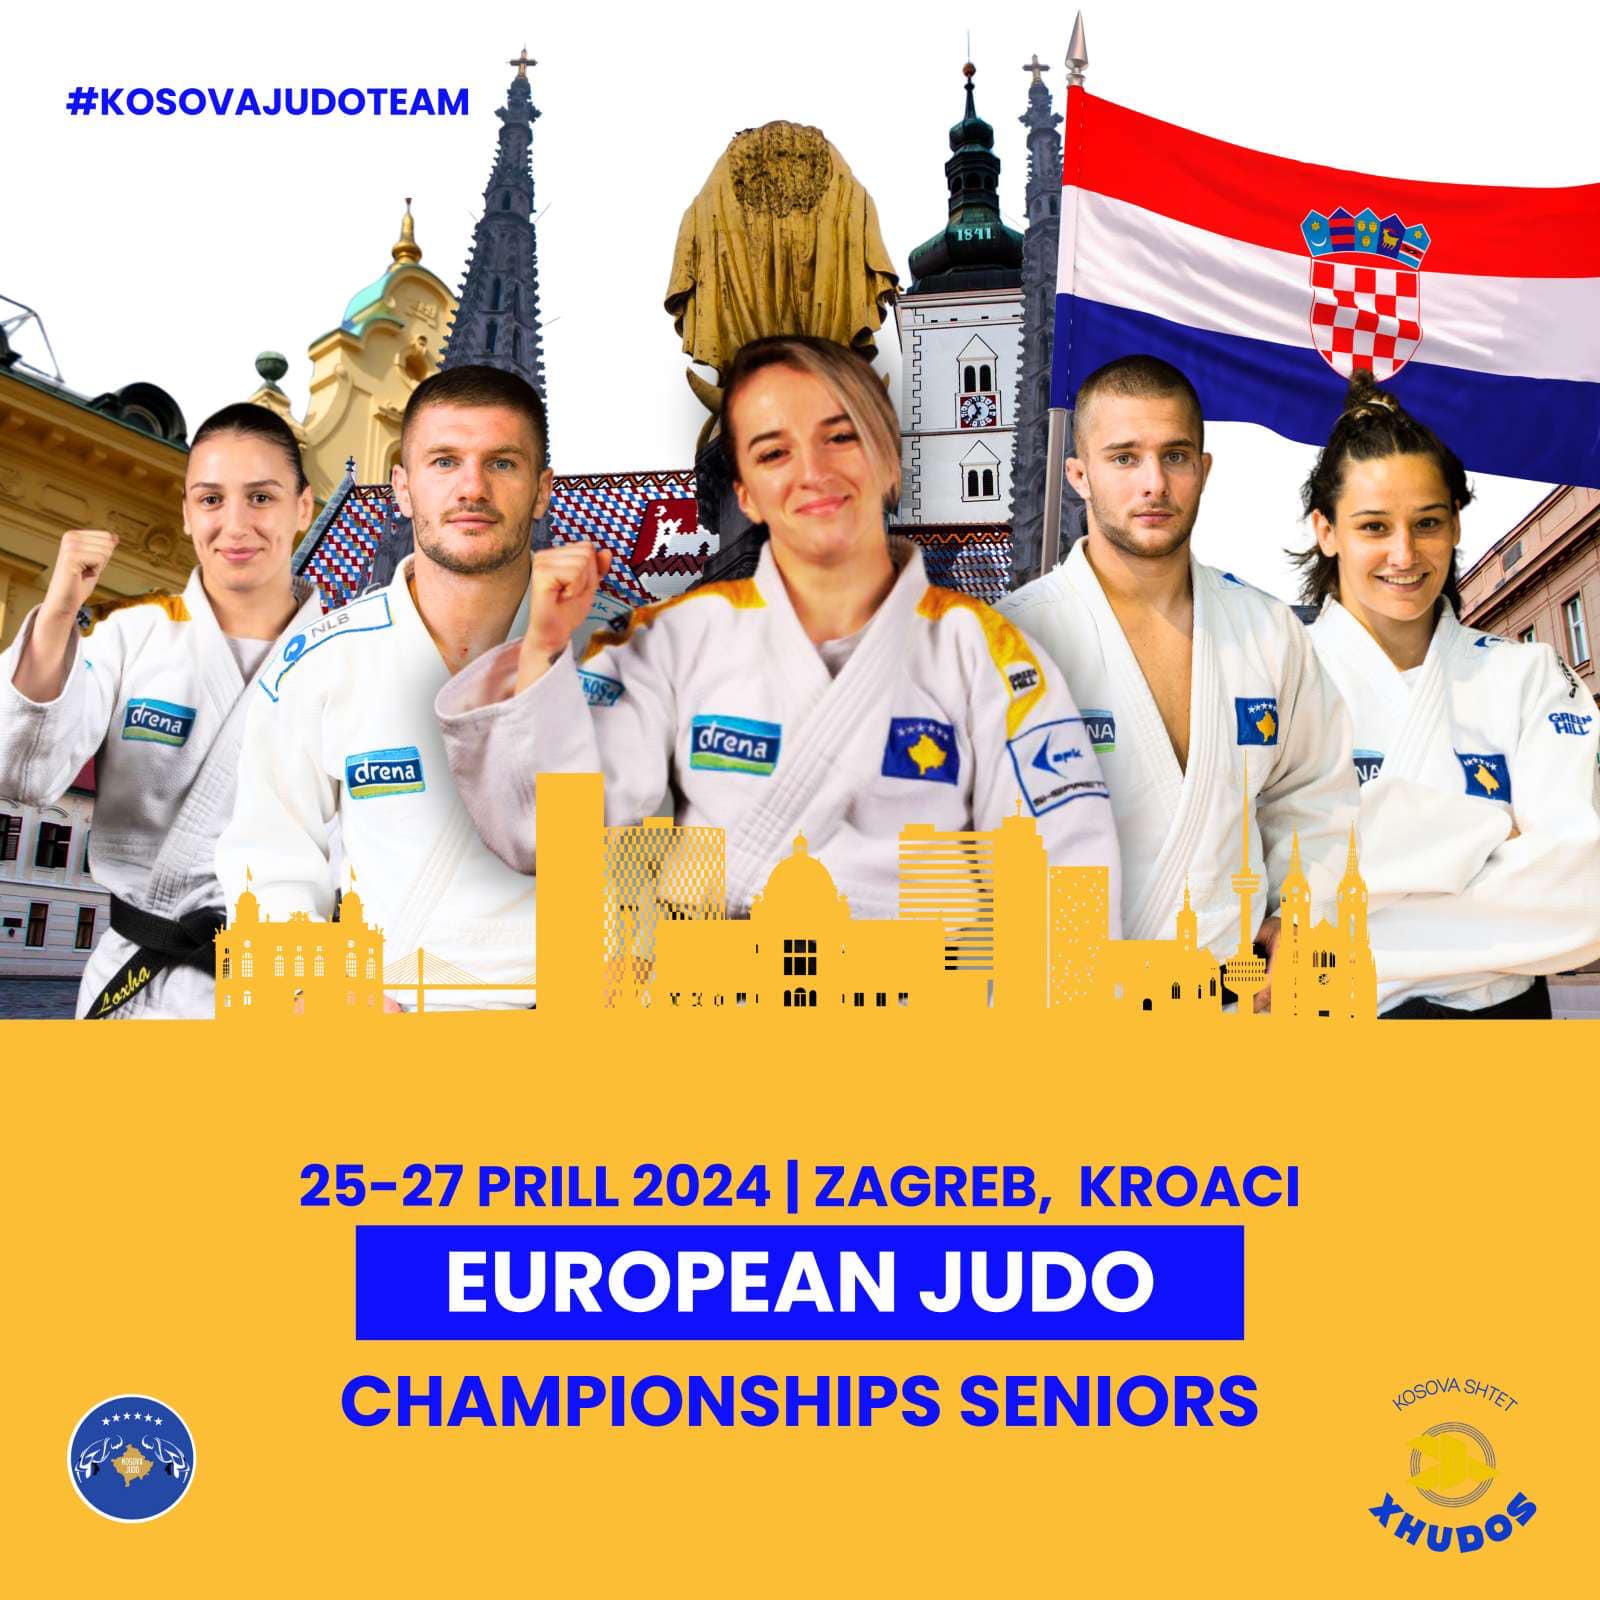 Kampionati Evropian i Xhudos mbahet me 25-27 prill, nga Kosova garojnë këta xhudistë